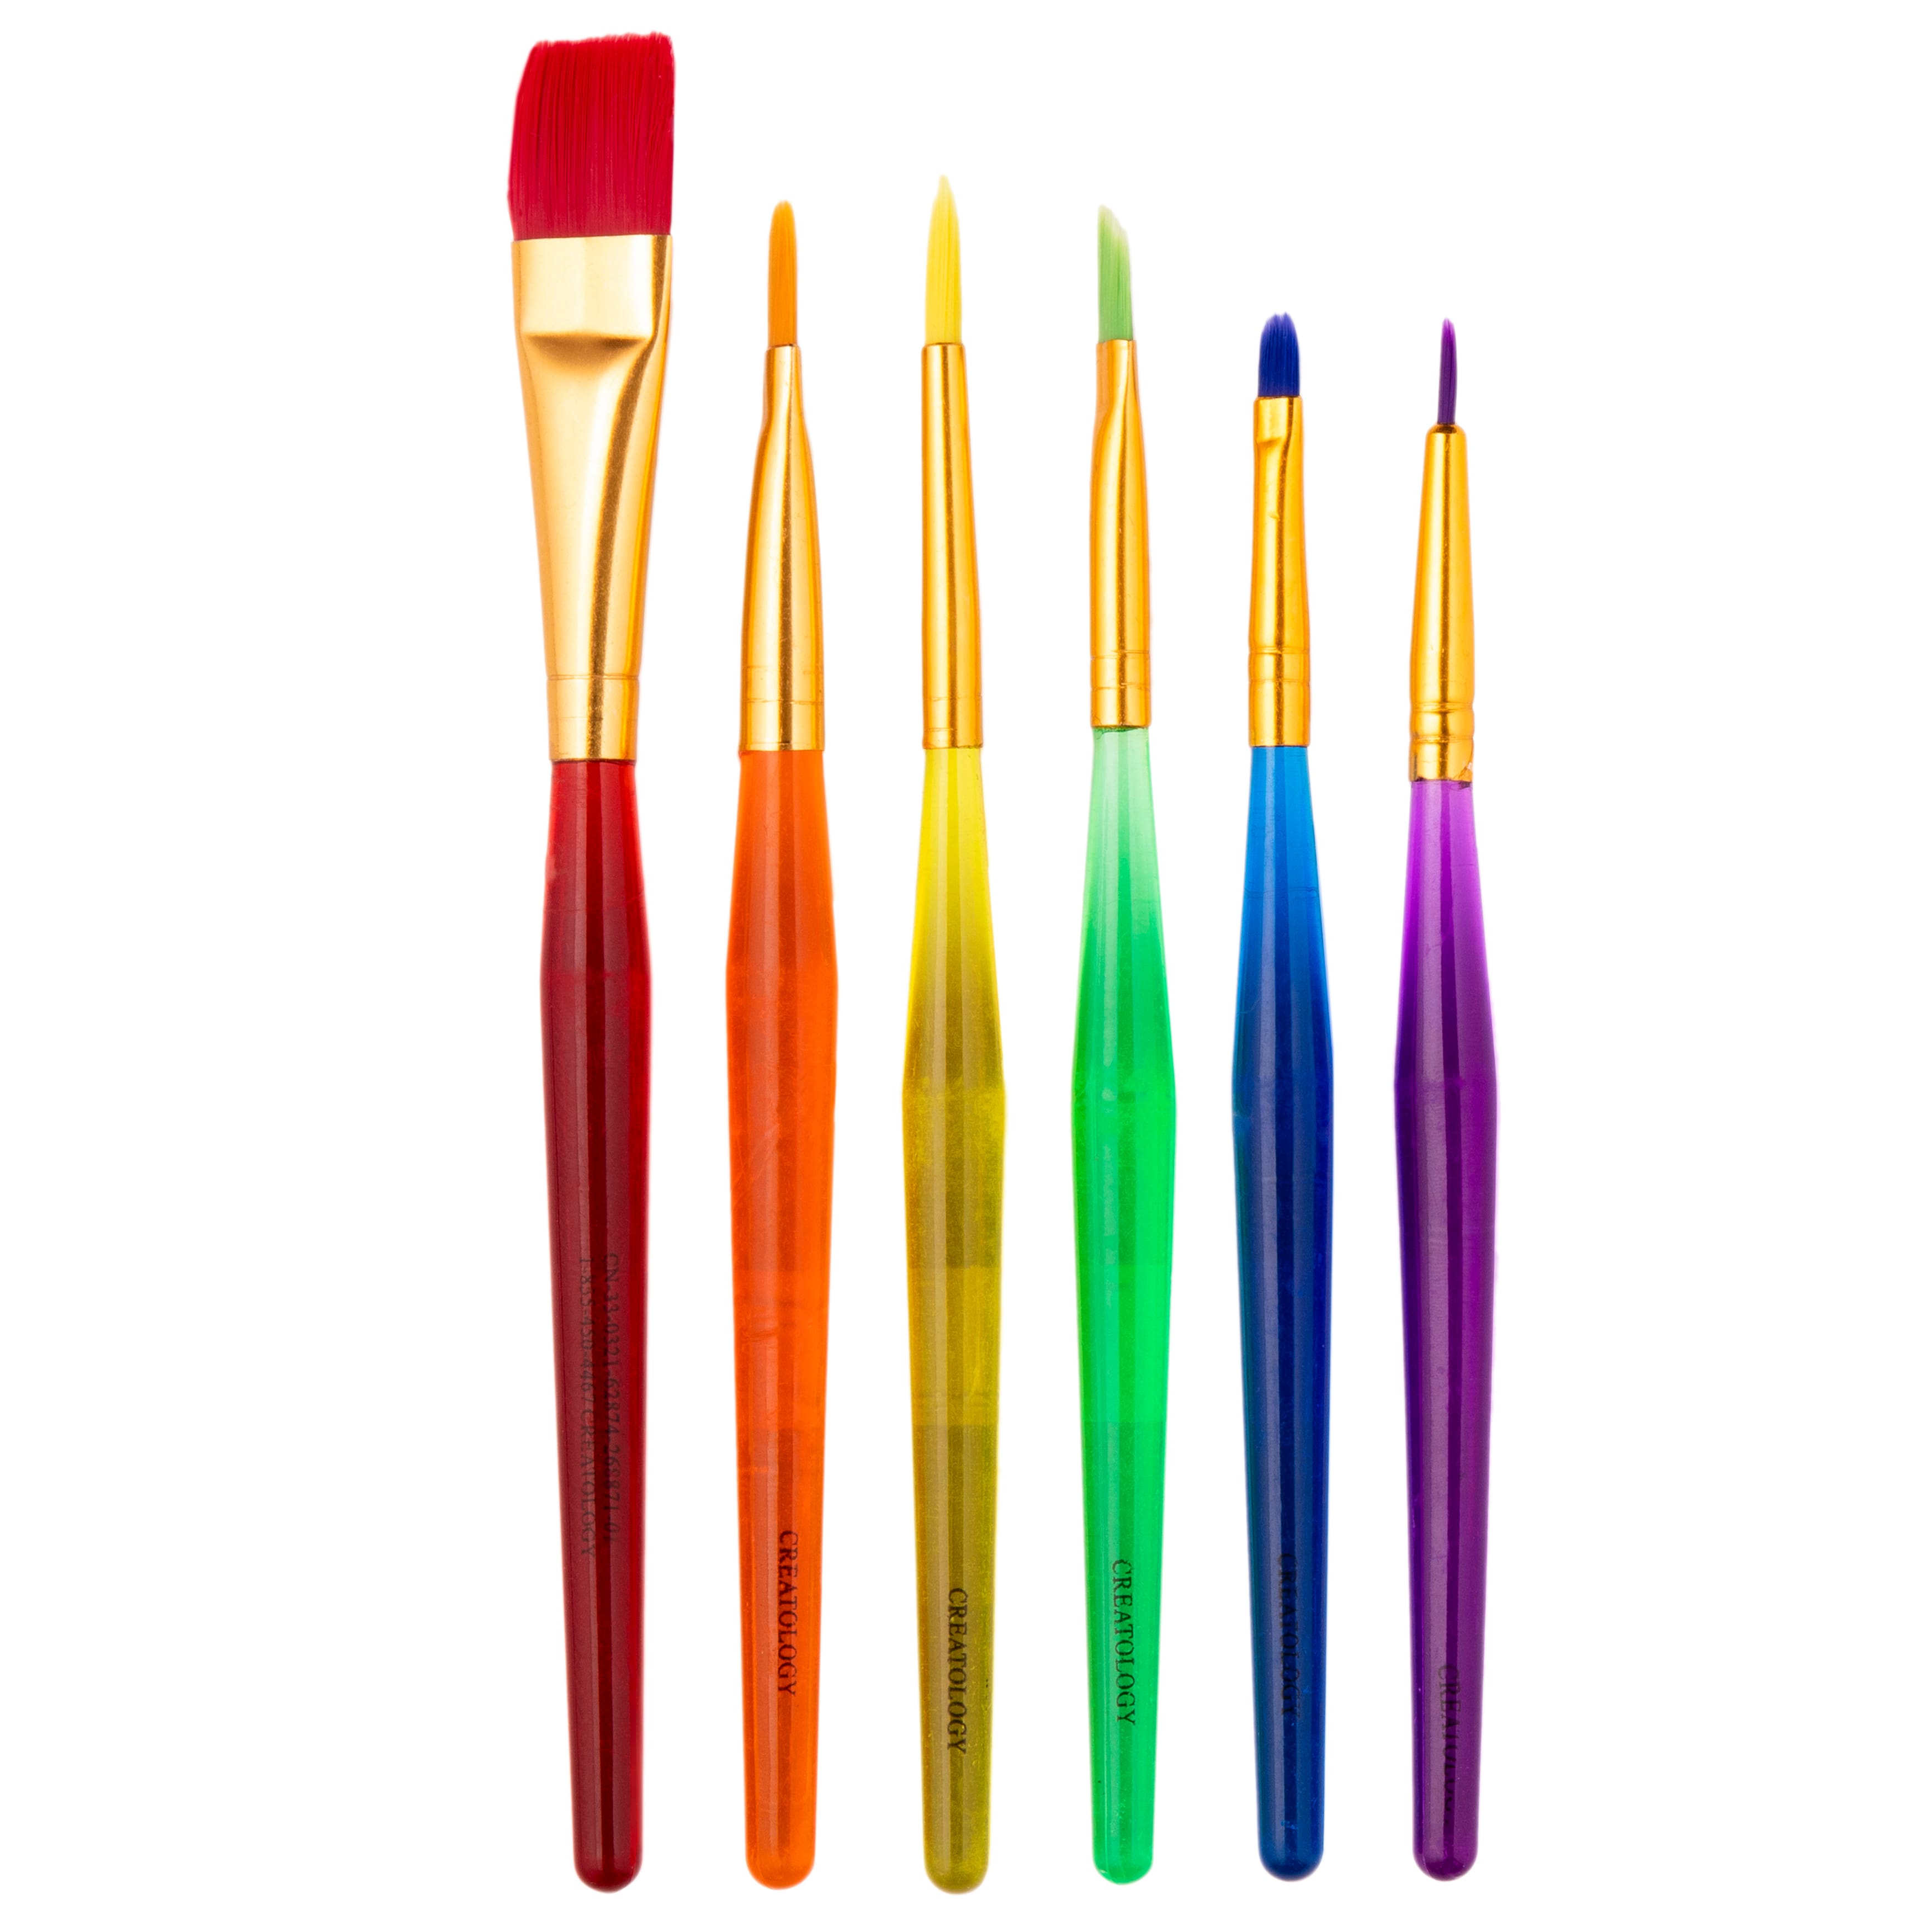 6 ct. Taklon Bristle Paintbrushes by Creatology™